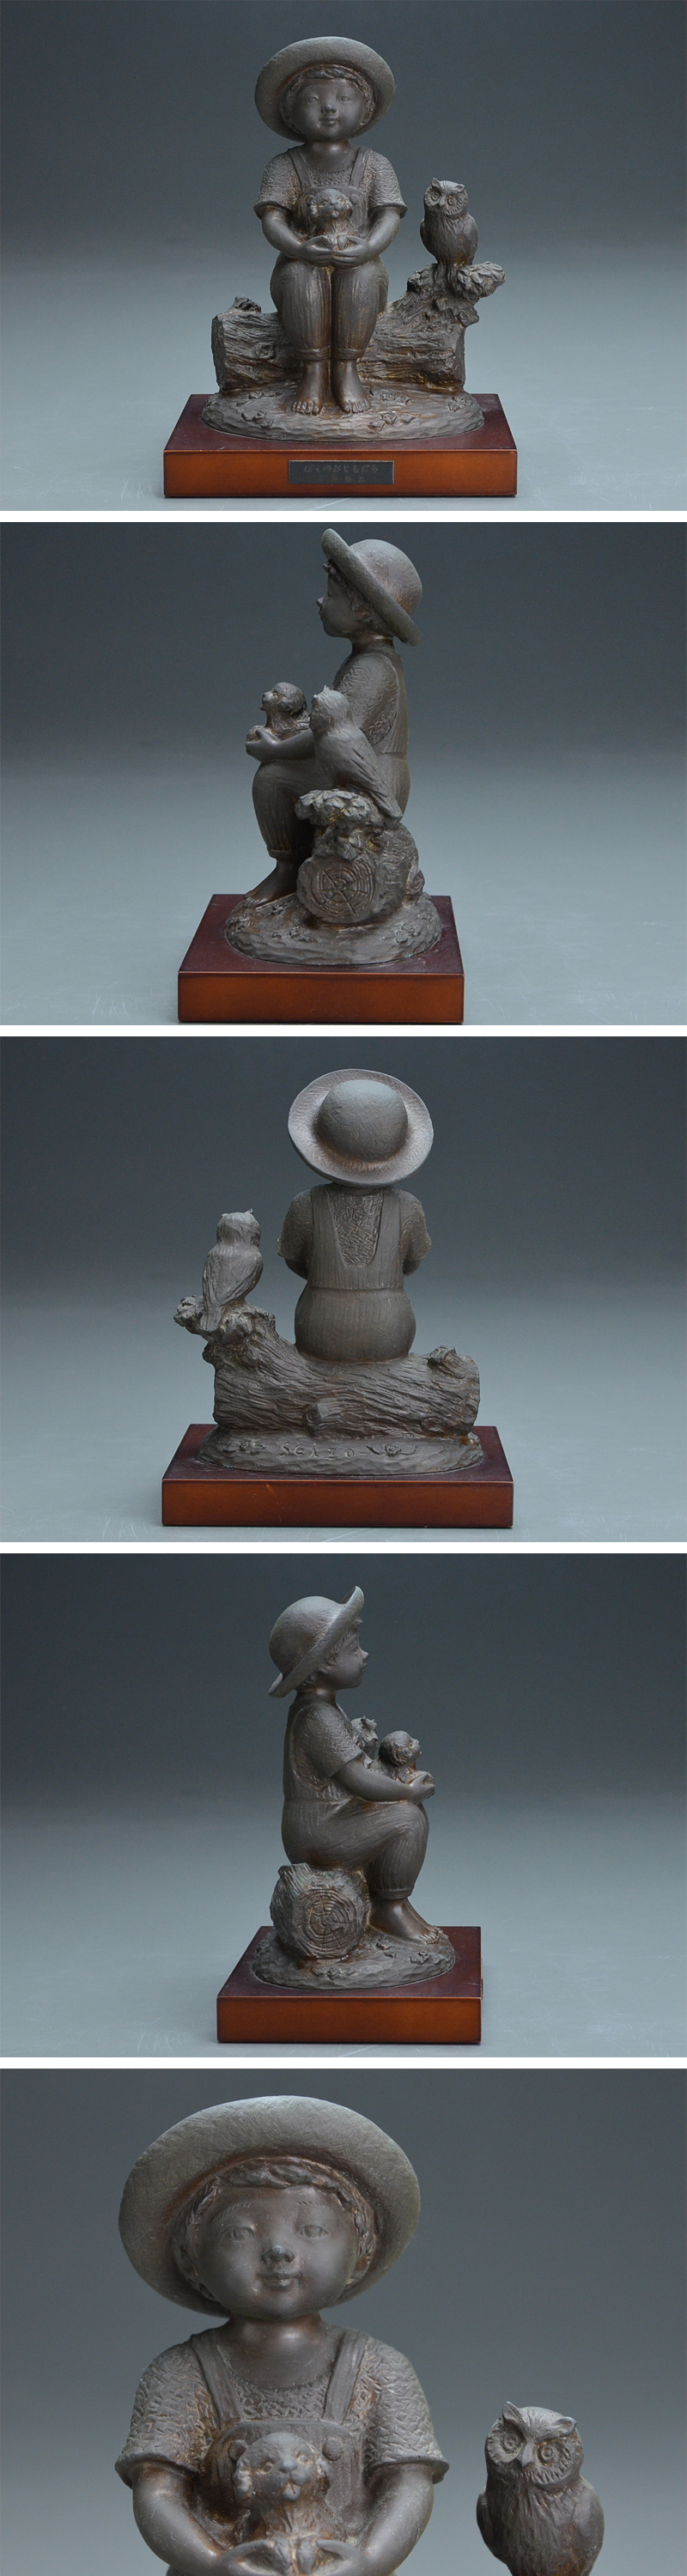 スマホ彫刻家 玉野 勢三 作 子供のブロンズ像『ぼくのおともだち』高さ24.5㎝ 06i841 西洋彫刻